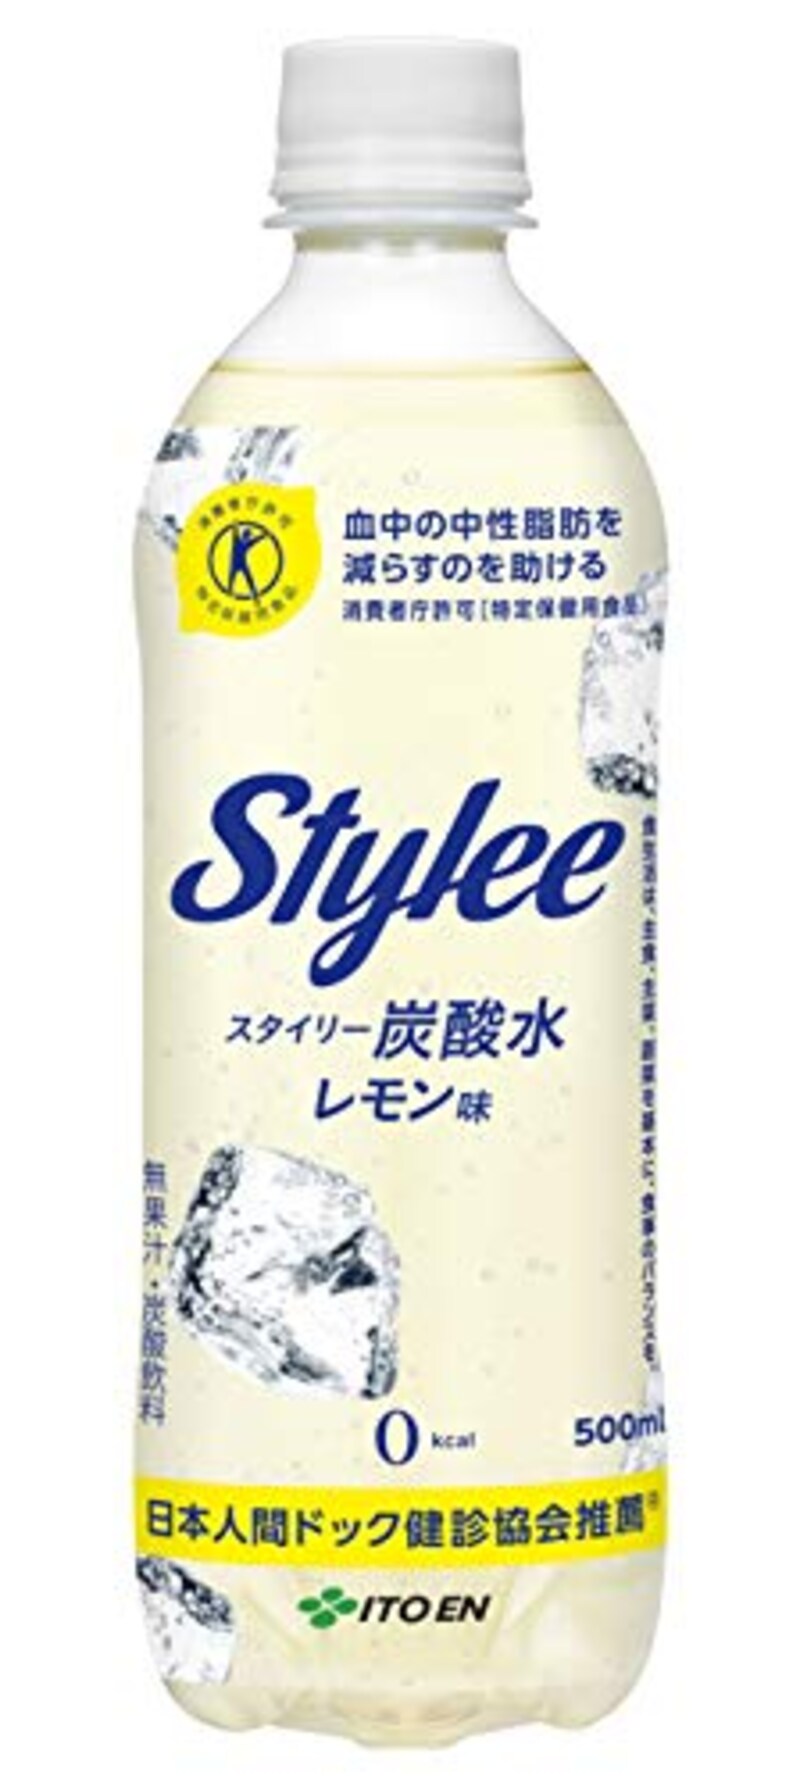 伊藤園,Stylee(スタイリー) 炭酸水 レモン味